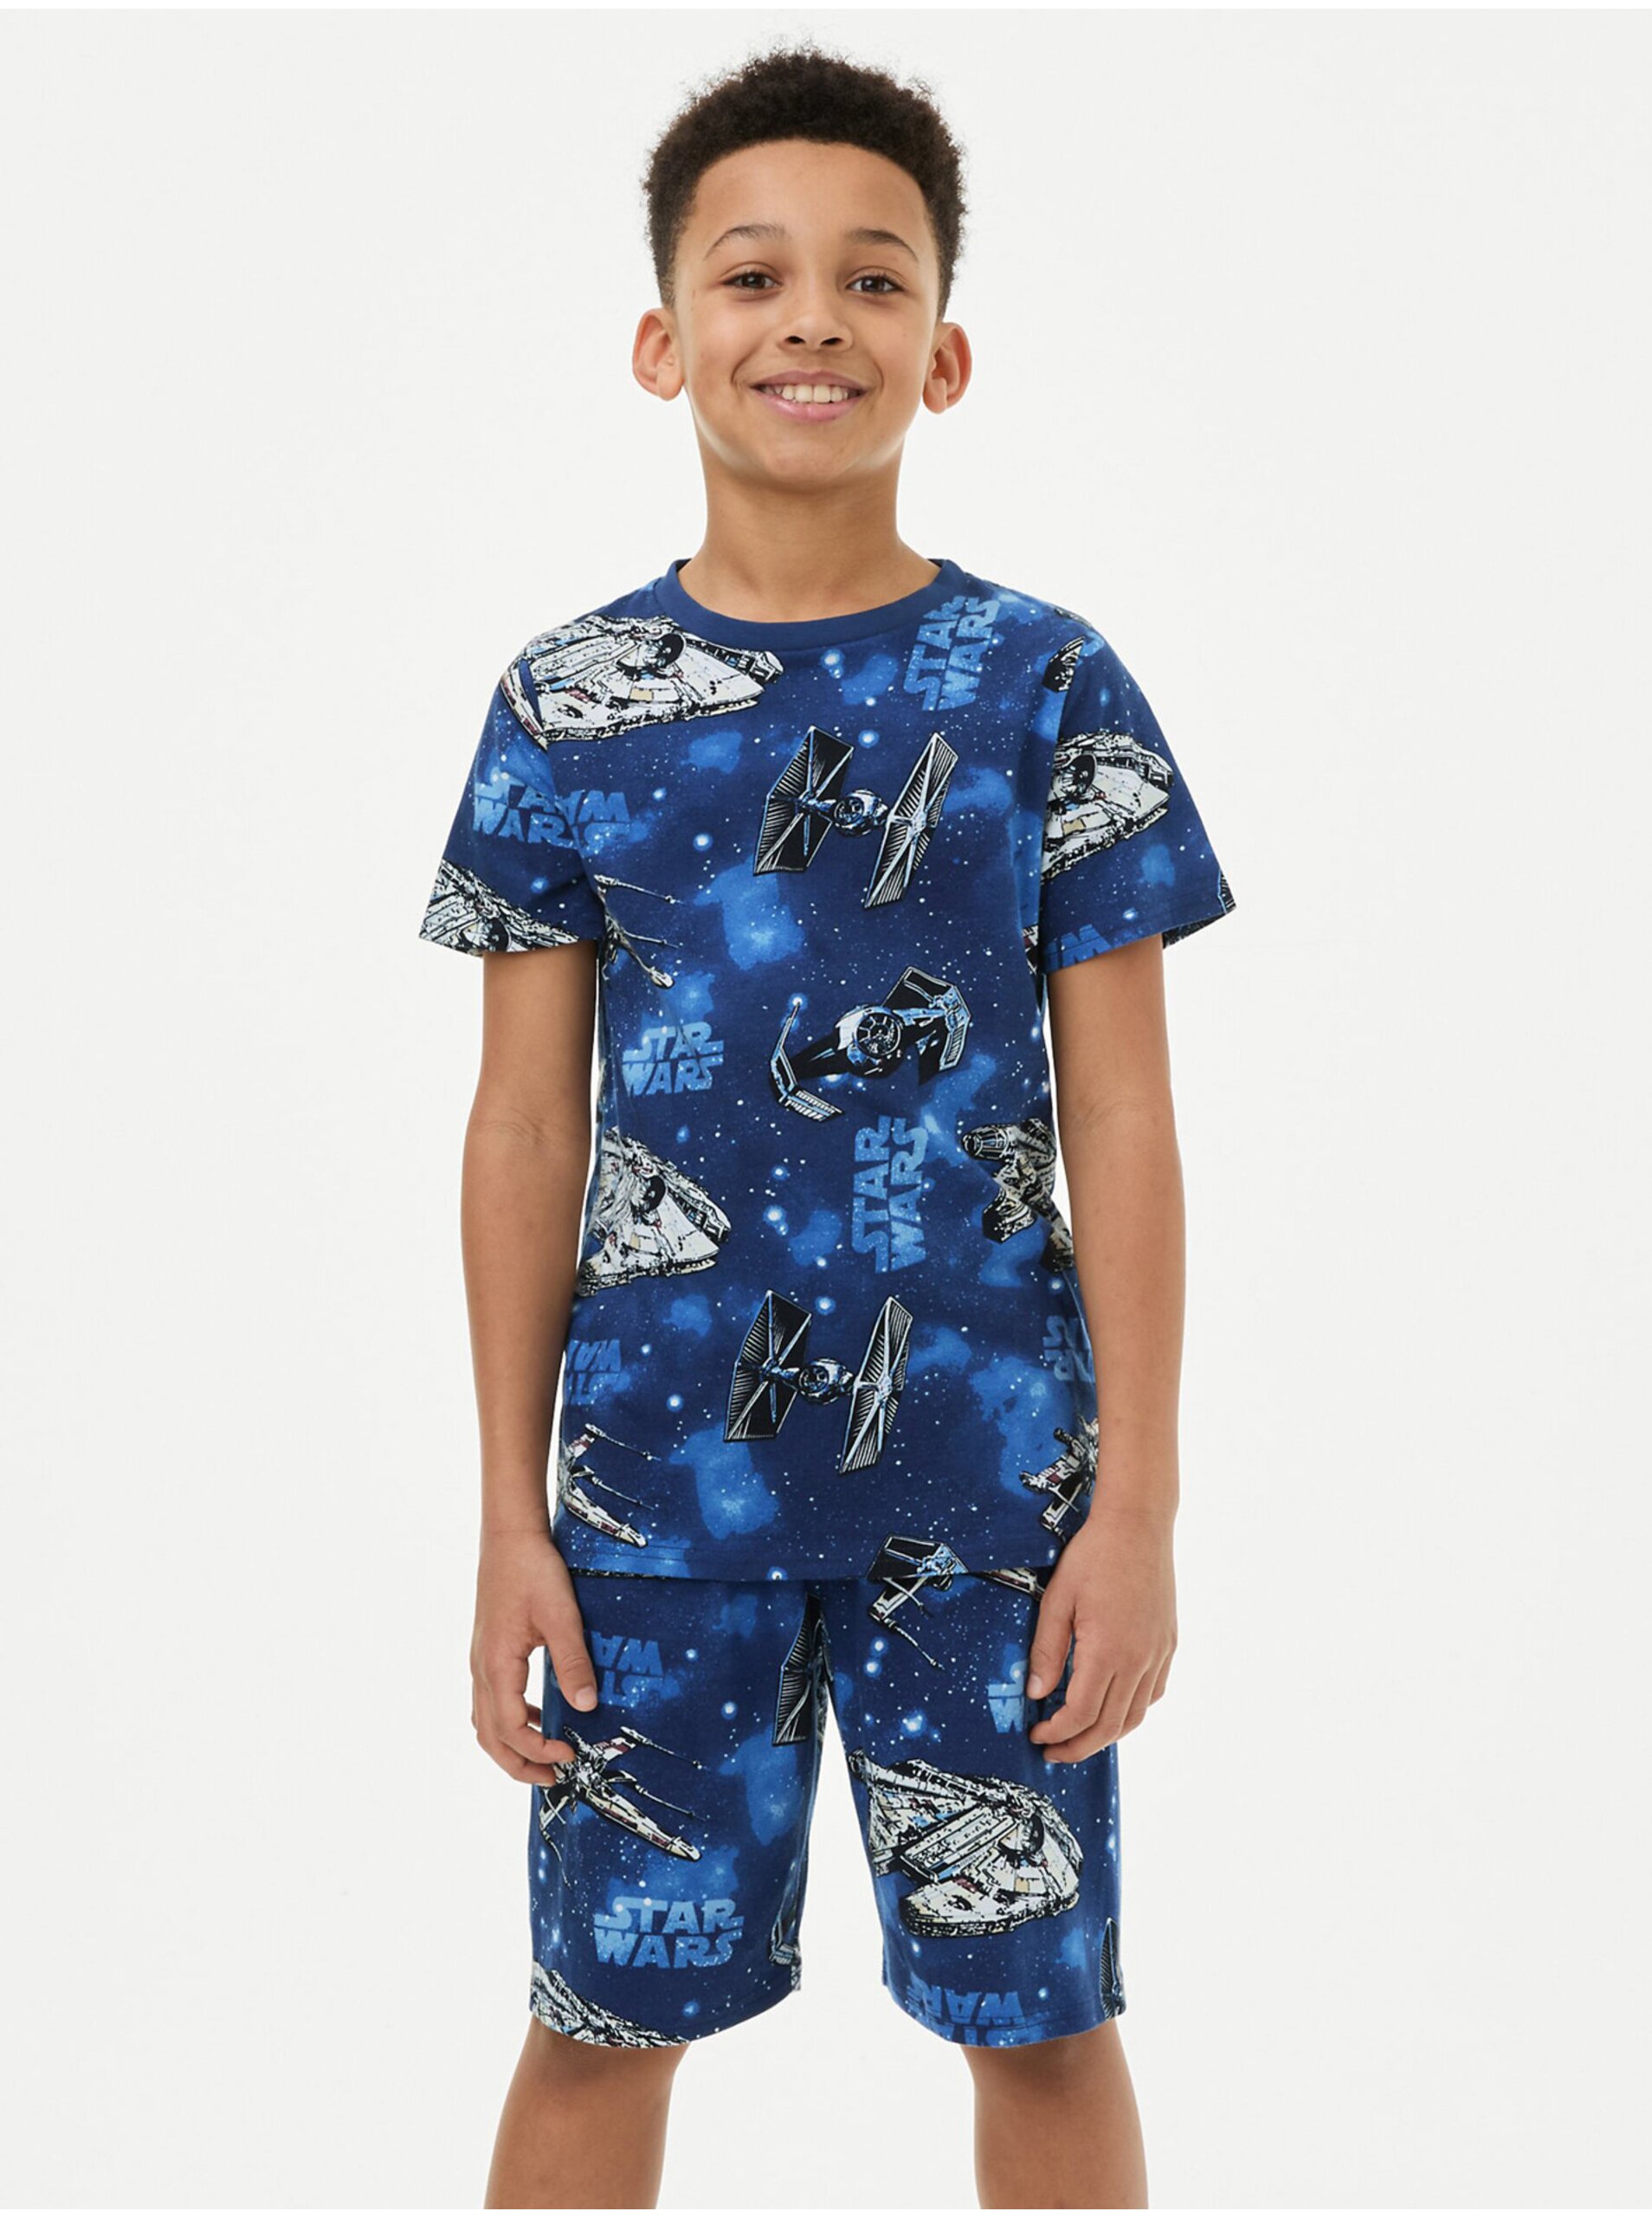 Lacno Tmavomodré chlapčenské pyžamo s motívom Star Wars Marks & Spencer